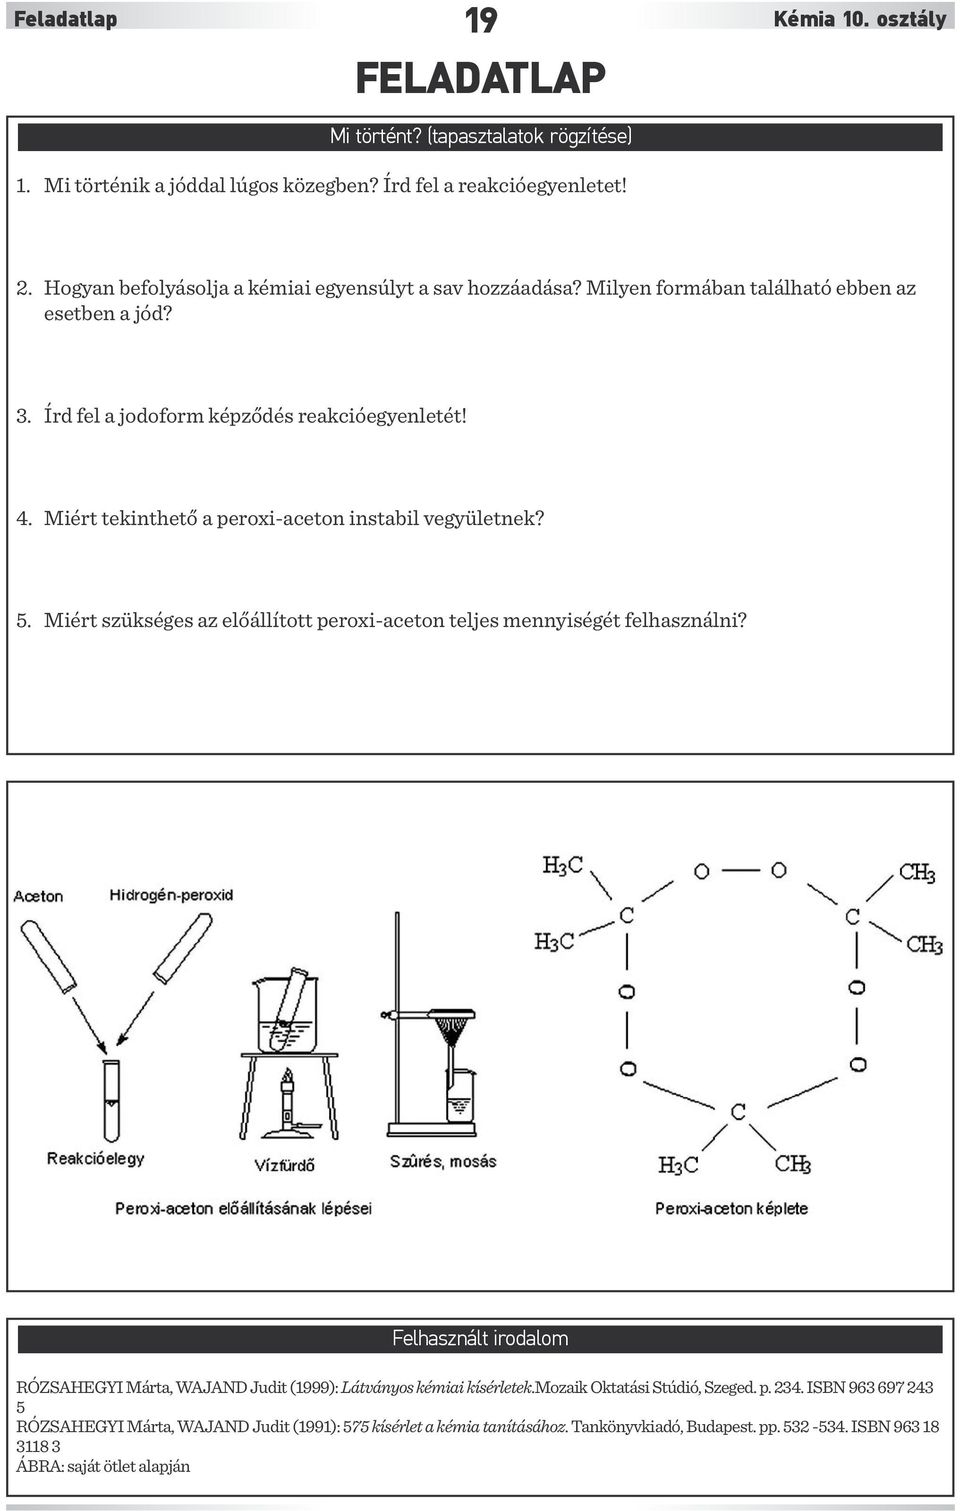 Miért tekinthető a peroxi-aceton instabil vegyületnek? 5. Miért szükséges az előállított peroxi-aceton teljes mennyiségét felhasználni?